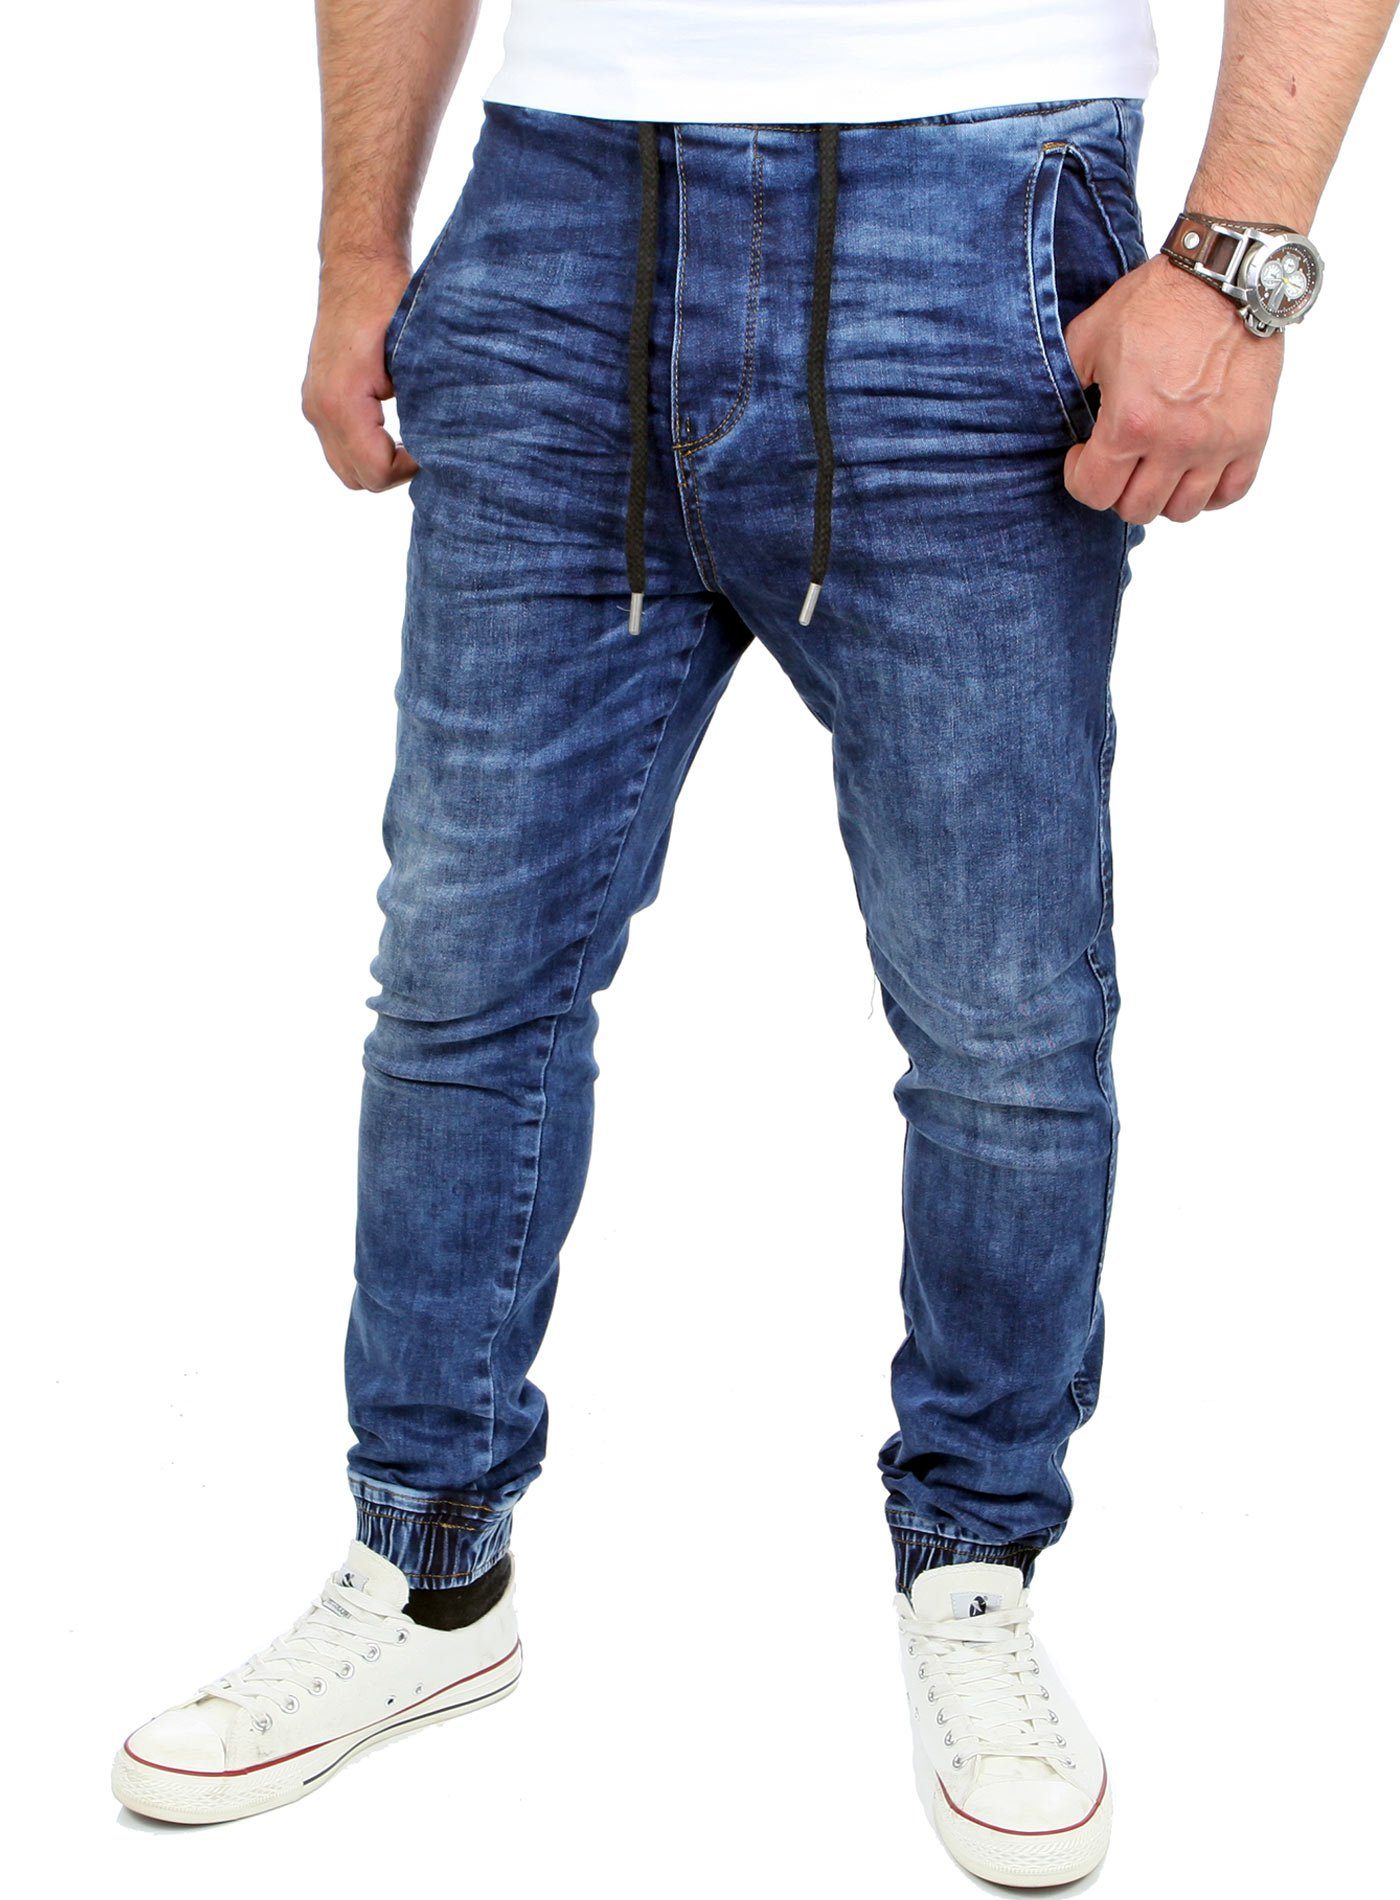 RS-2071 Jeans-Herren Fit Jogging-Hose Casual blau Jogging-Denim Reslad Stretch-Jeans Slim Style Fit Reslad Stretch Slim